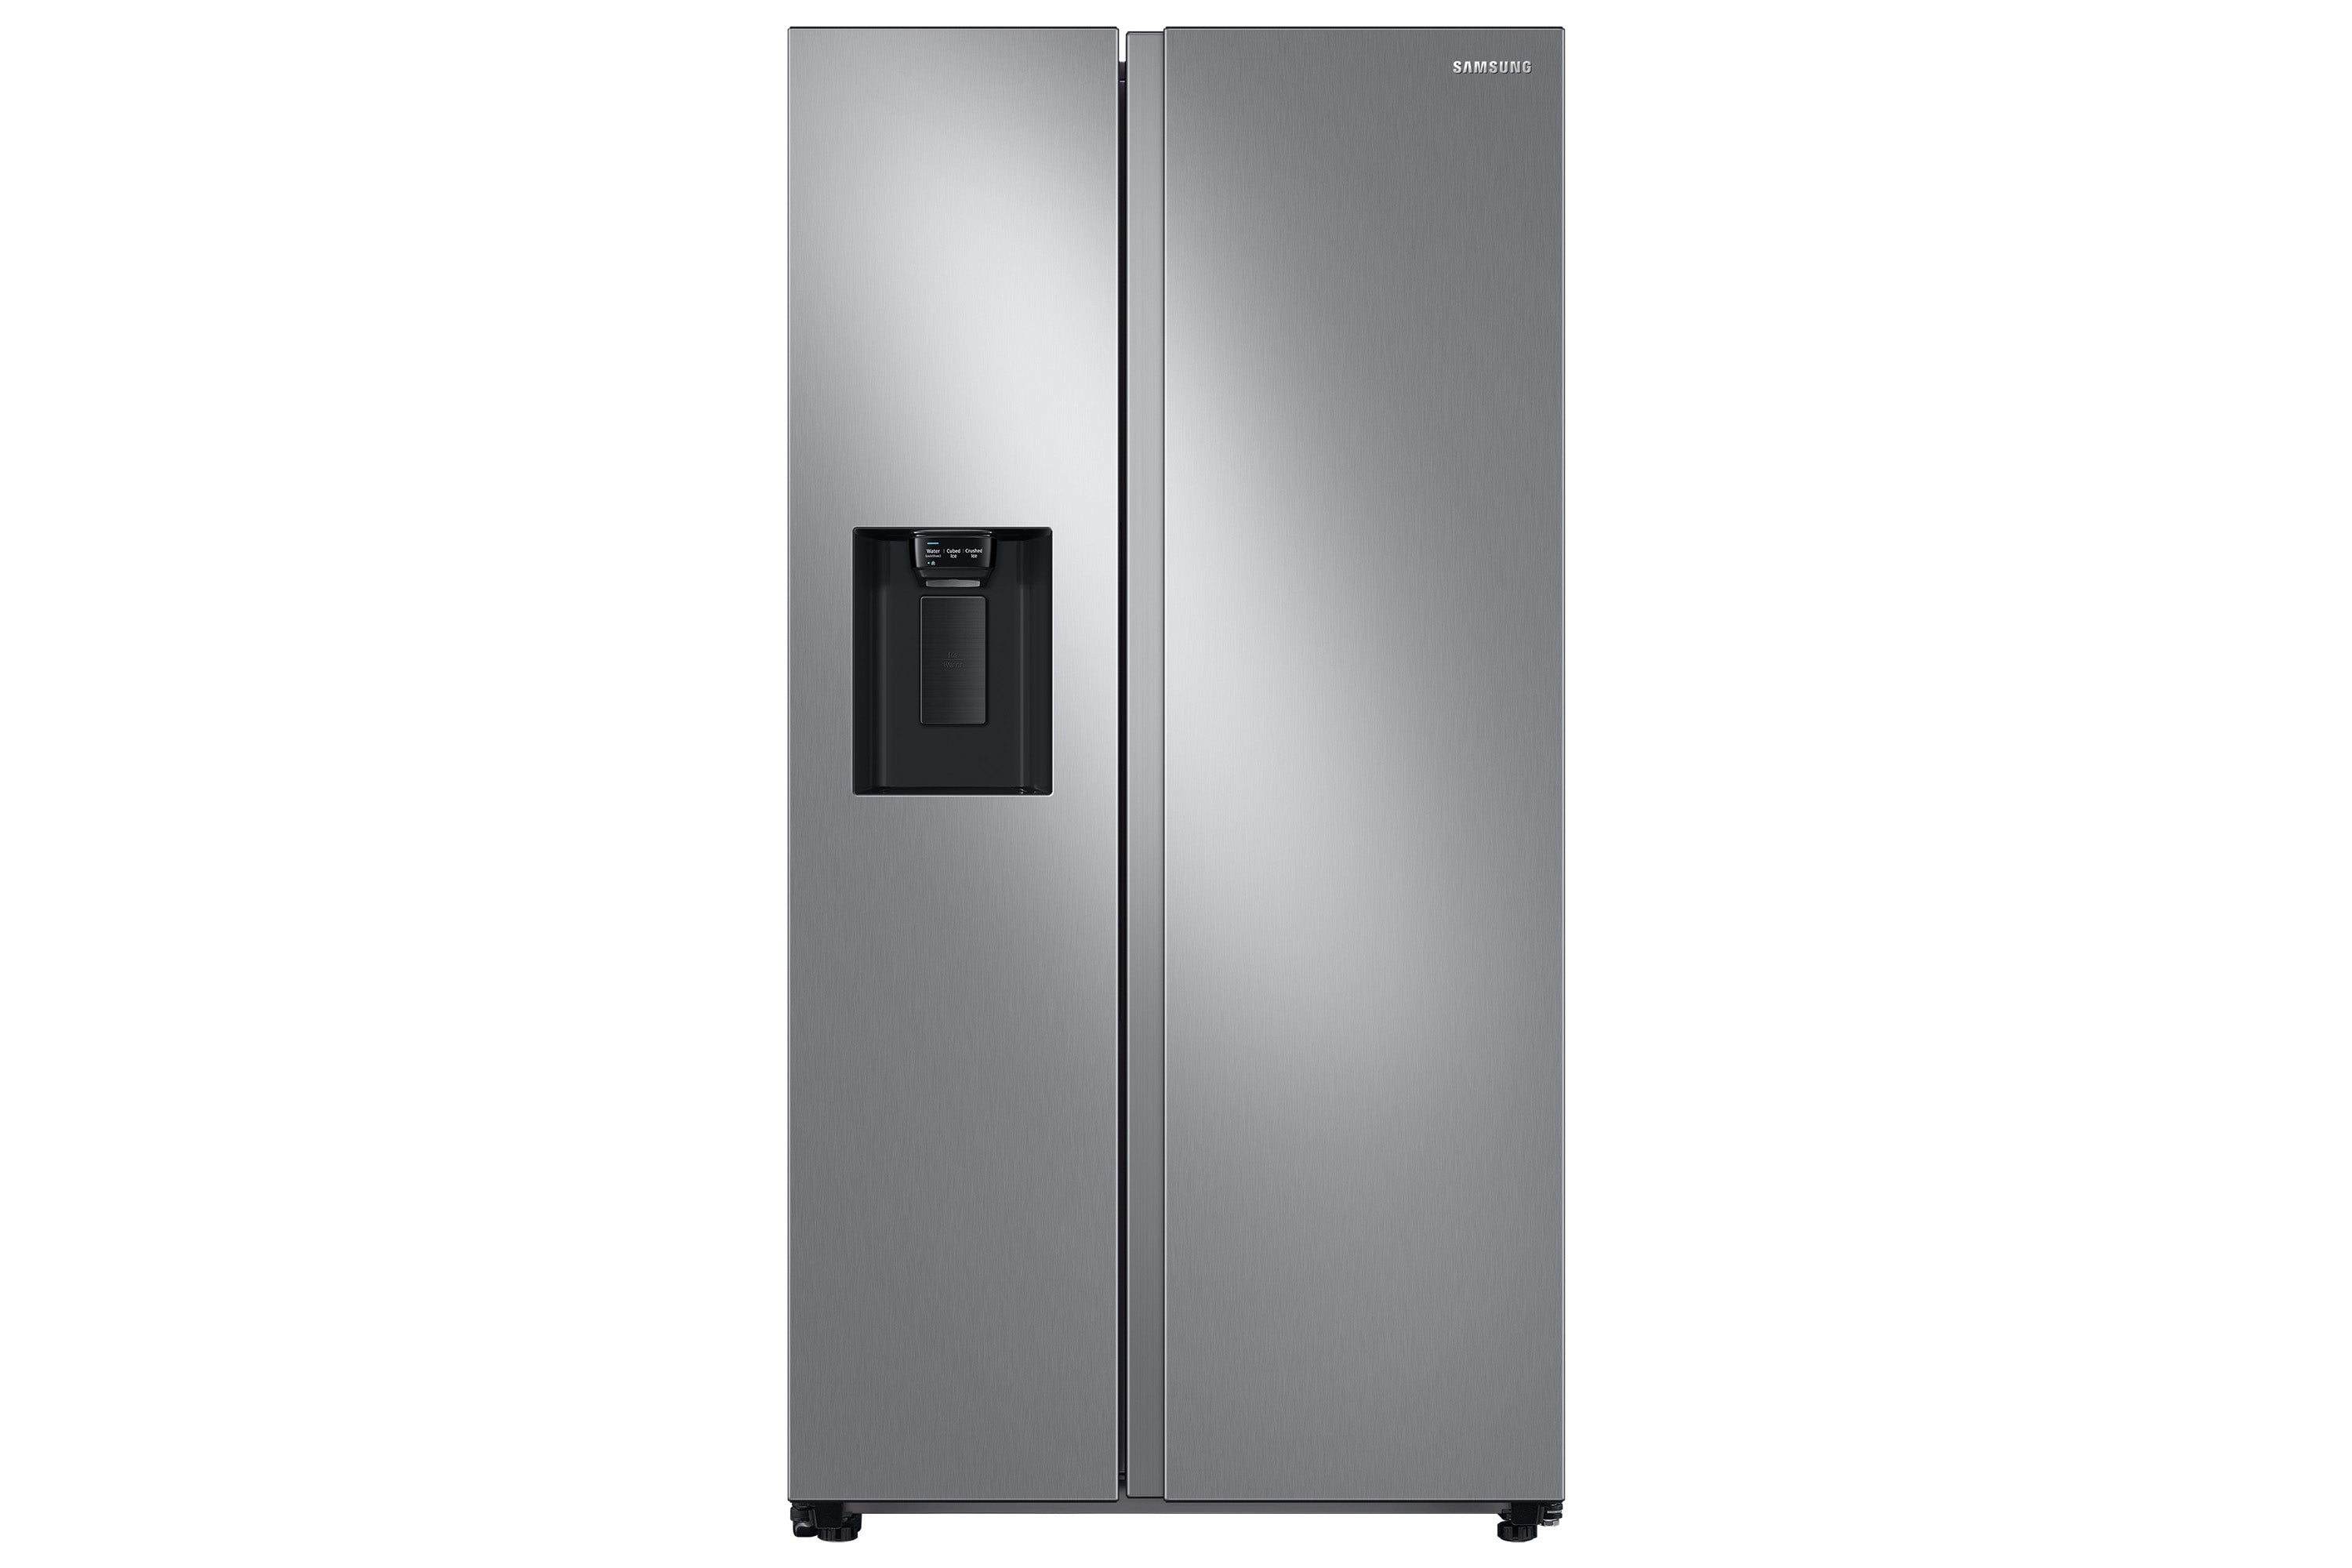 Refrigeradora Samsung 22 pies cúbicos SIDE BY SIDE modelo RS22T5200S9/AP  silver  all around cooling inverter dispensador de agua